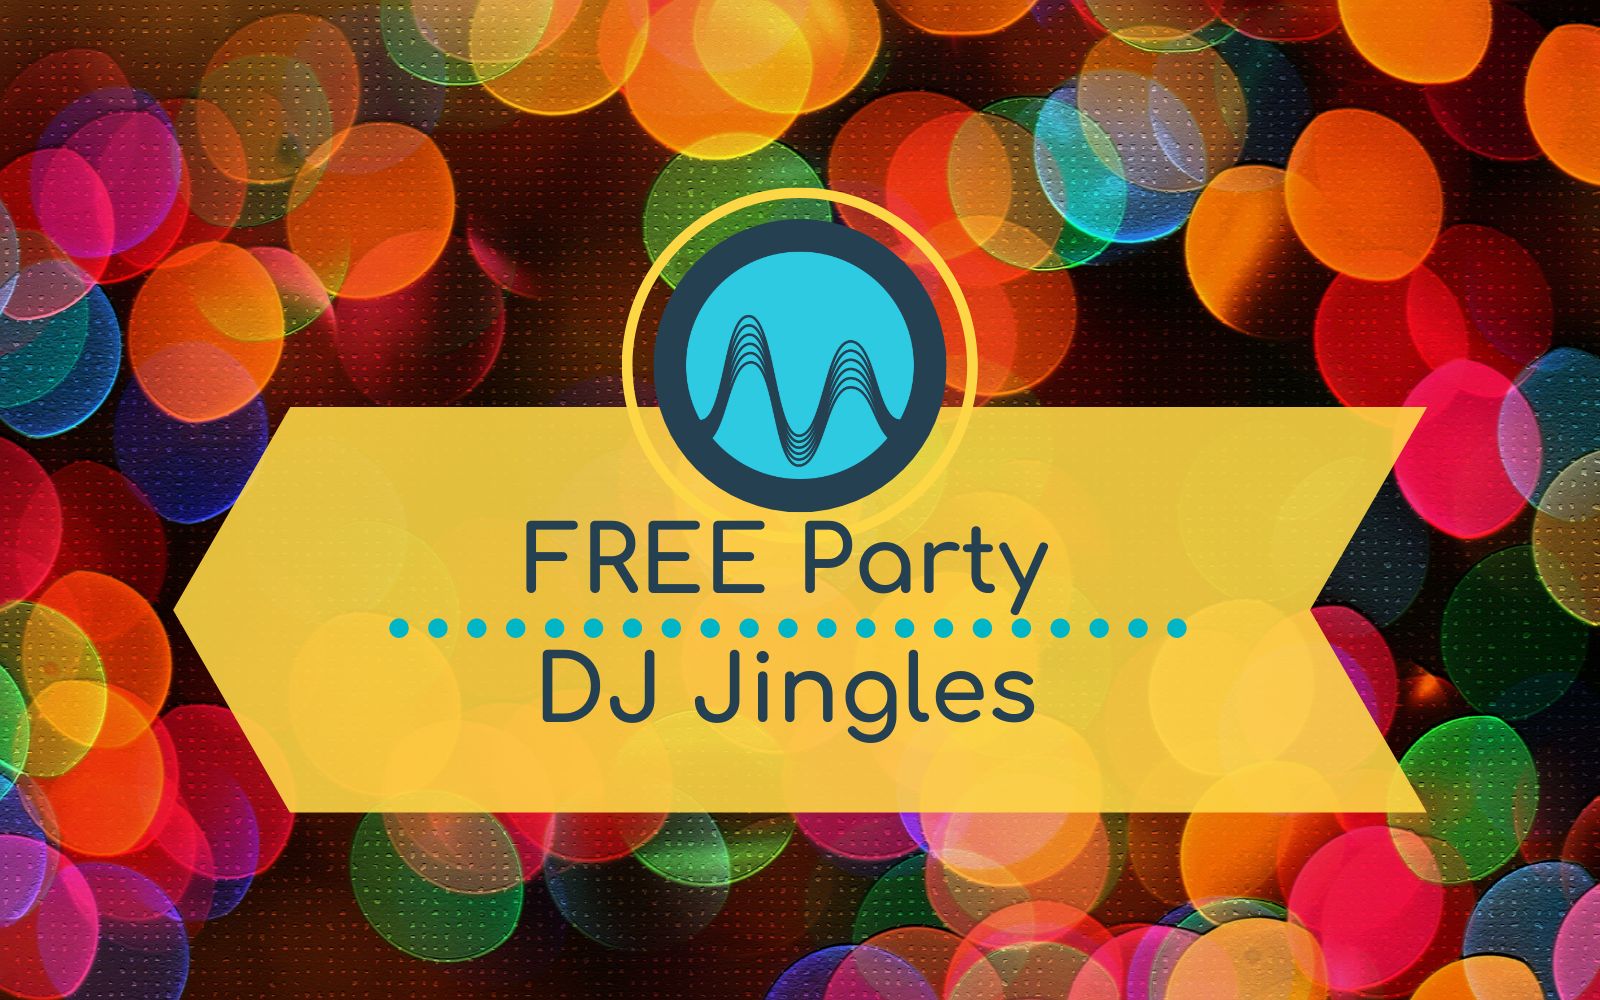 Free Party DJ Jingles